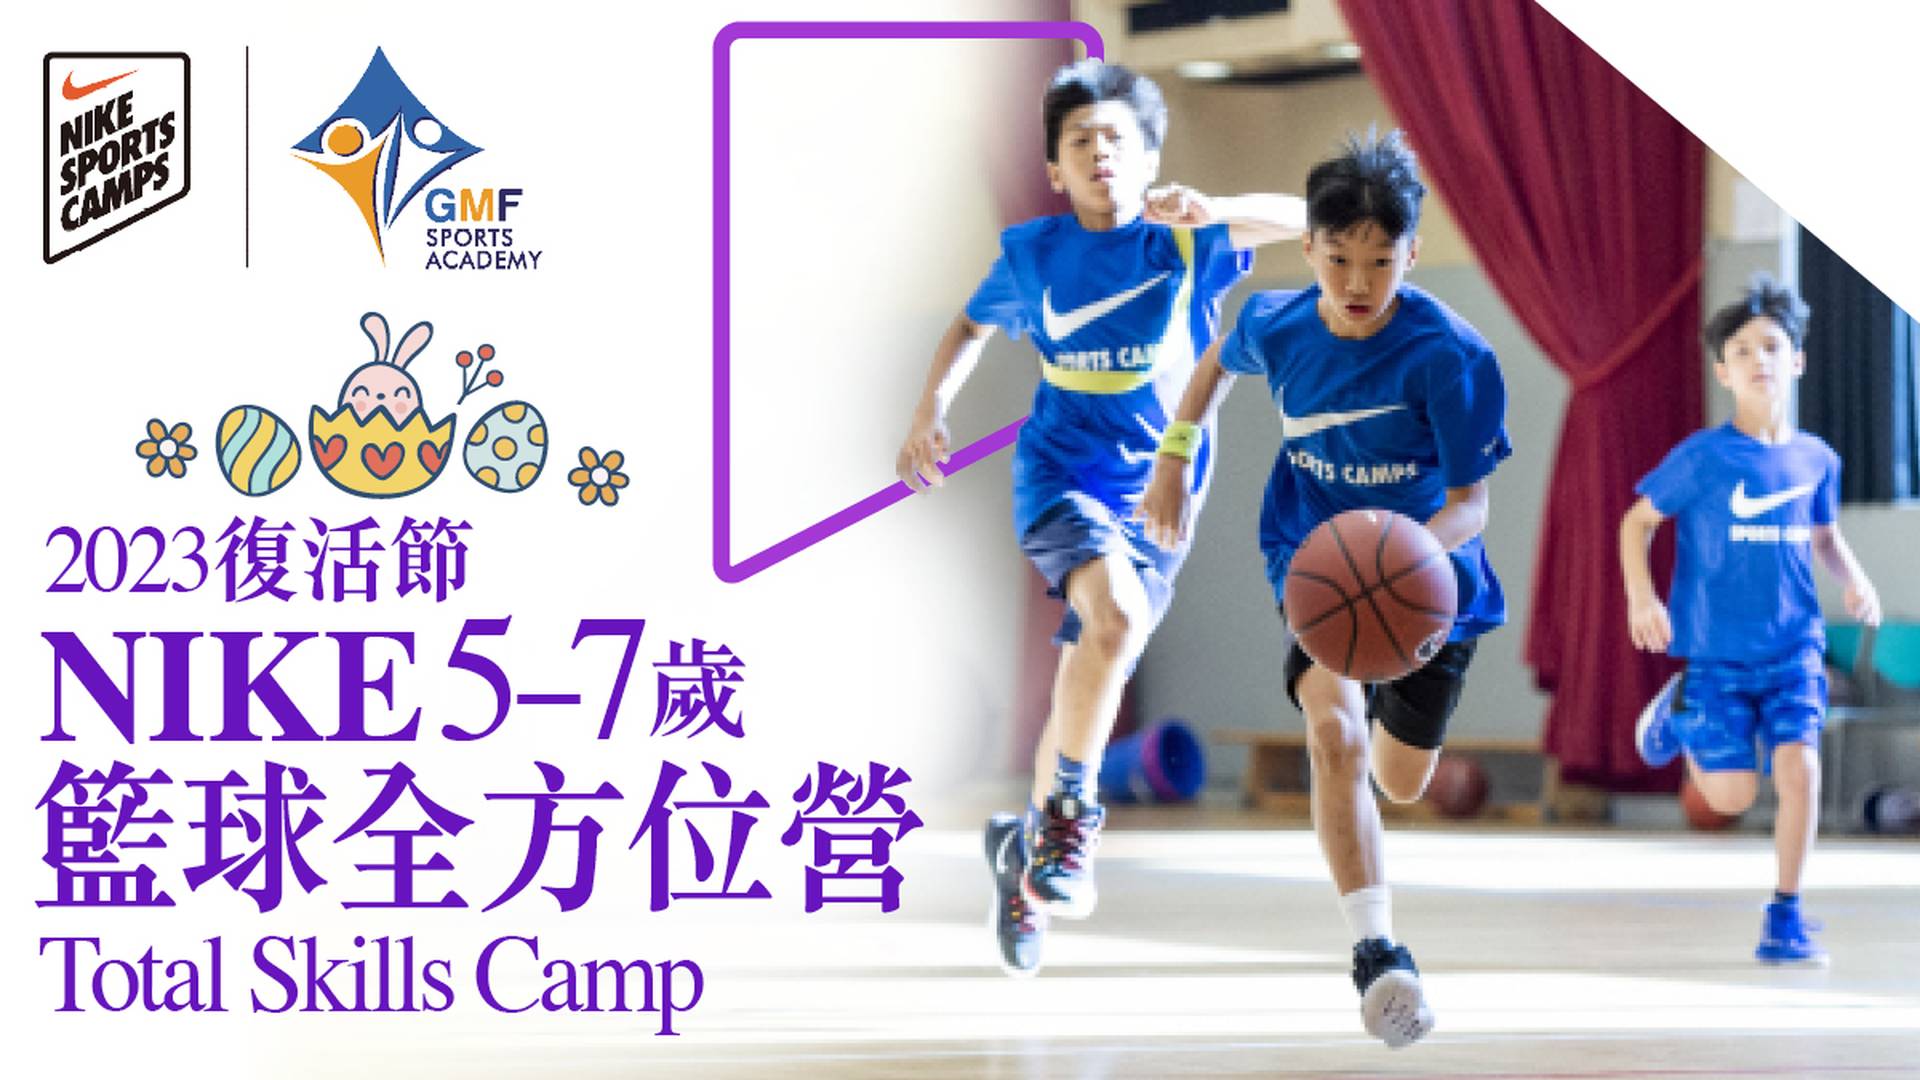 Nike Total Skills Camp 復活節NIKE籃球全方位營 2023 (5 - 7 歲)